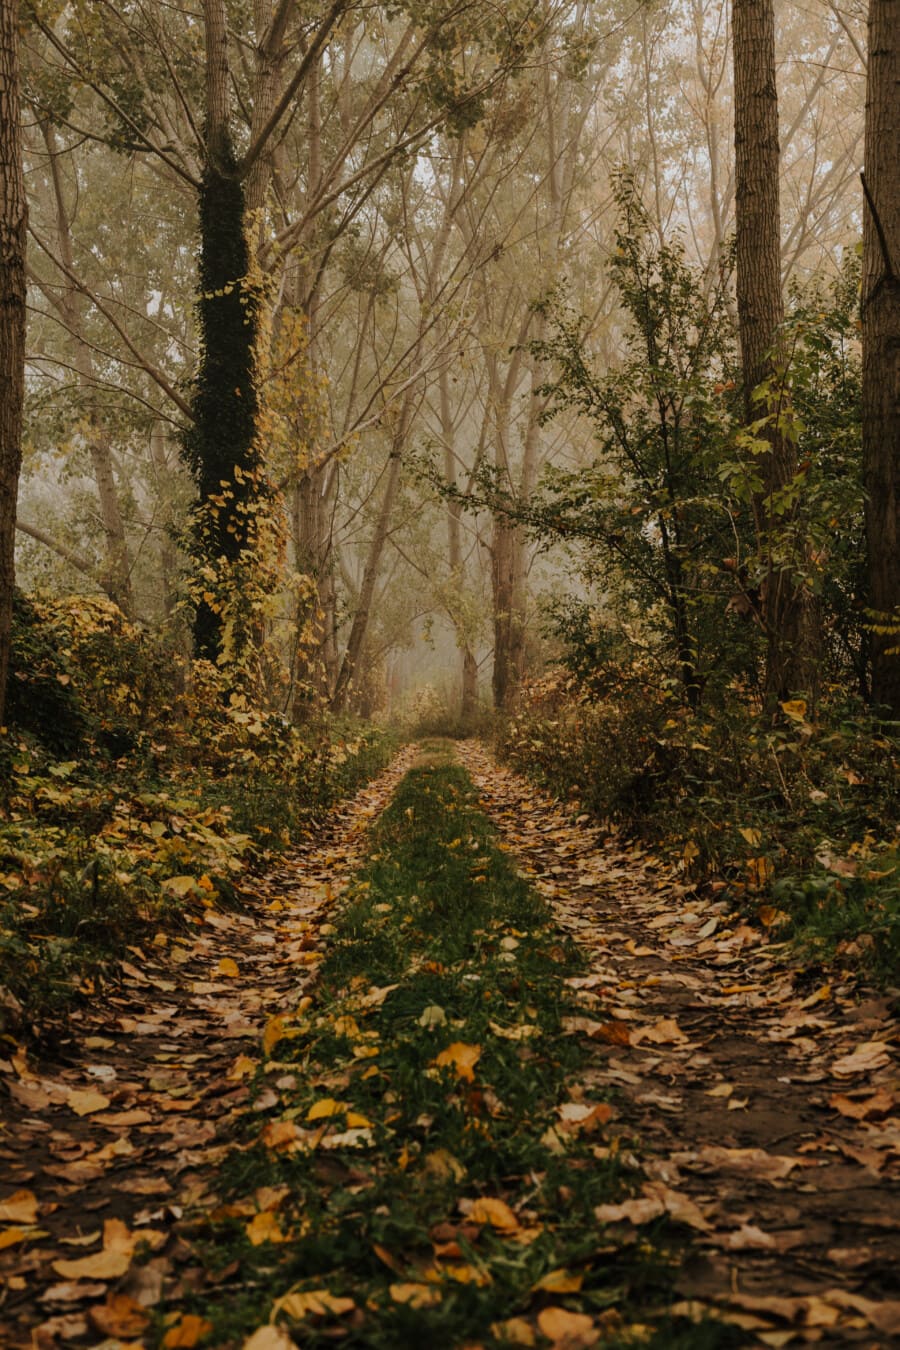 เส้นทางเดินป่า, ถนนป่า, ฤดูใบไม้ร่วง, เส้นทางเดินป่า, ทางเดิน, หมอก, เส้นทาง, ฤดูใบไม้ร่วง, สวน, ต้นไม้